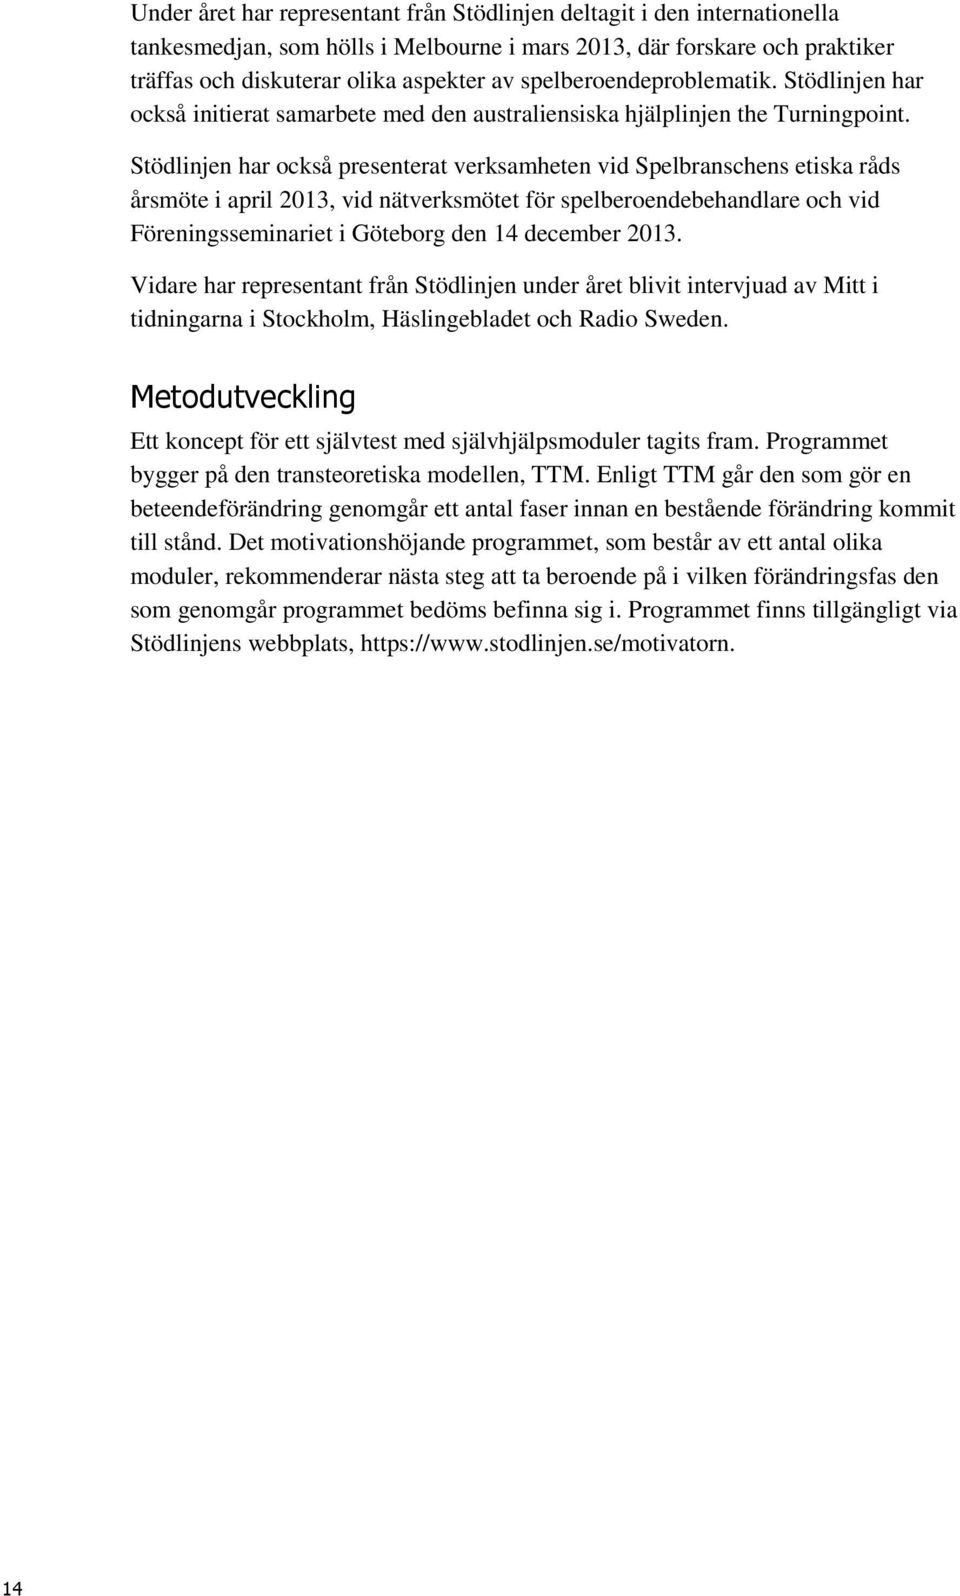 Stödlinjen har också presenterat verksamheten vid Spelbranschens etiska råds årsmöte i april 2013, vid nätverksmötet för spelberoendebehandlare och vid Föreningsseminariet i Göteborg den 14 december